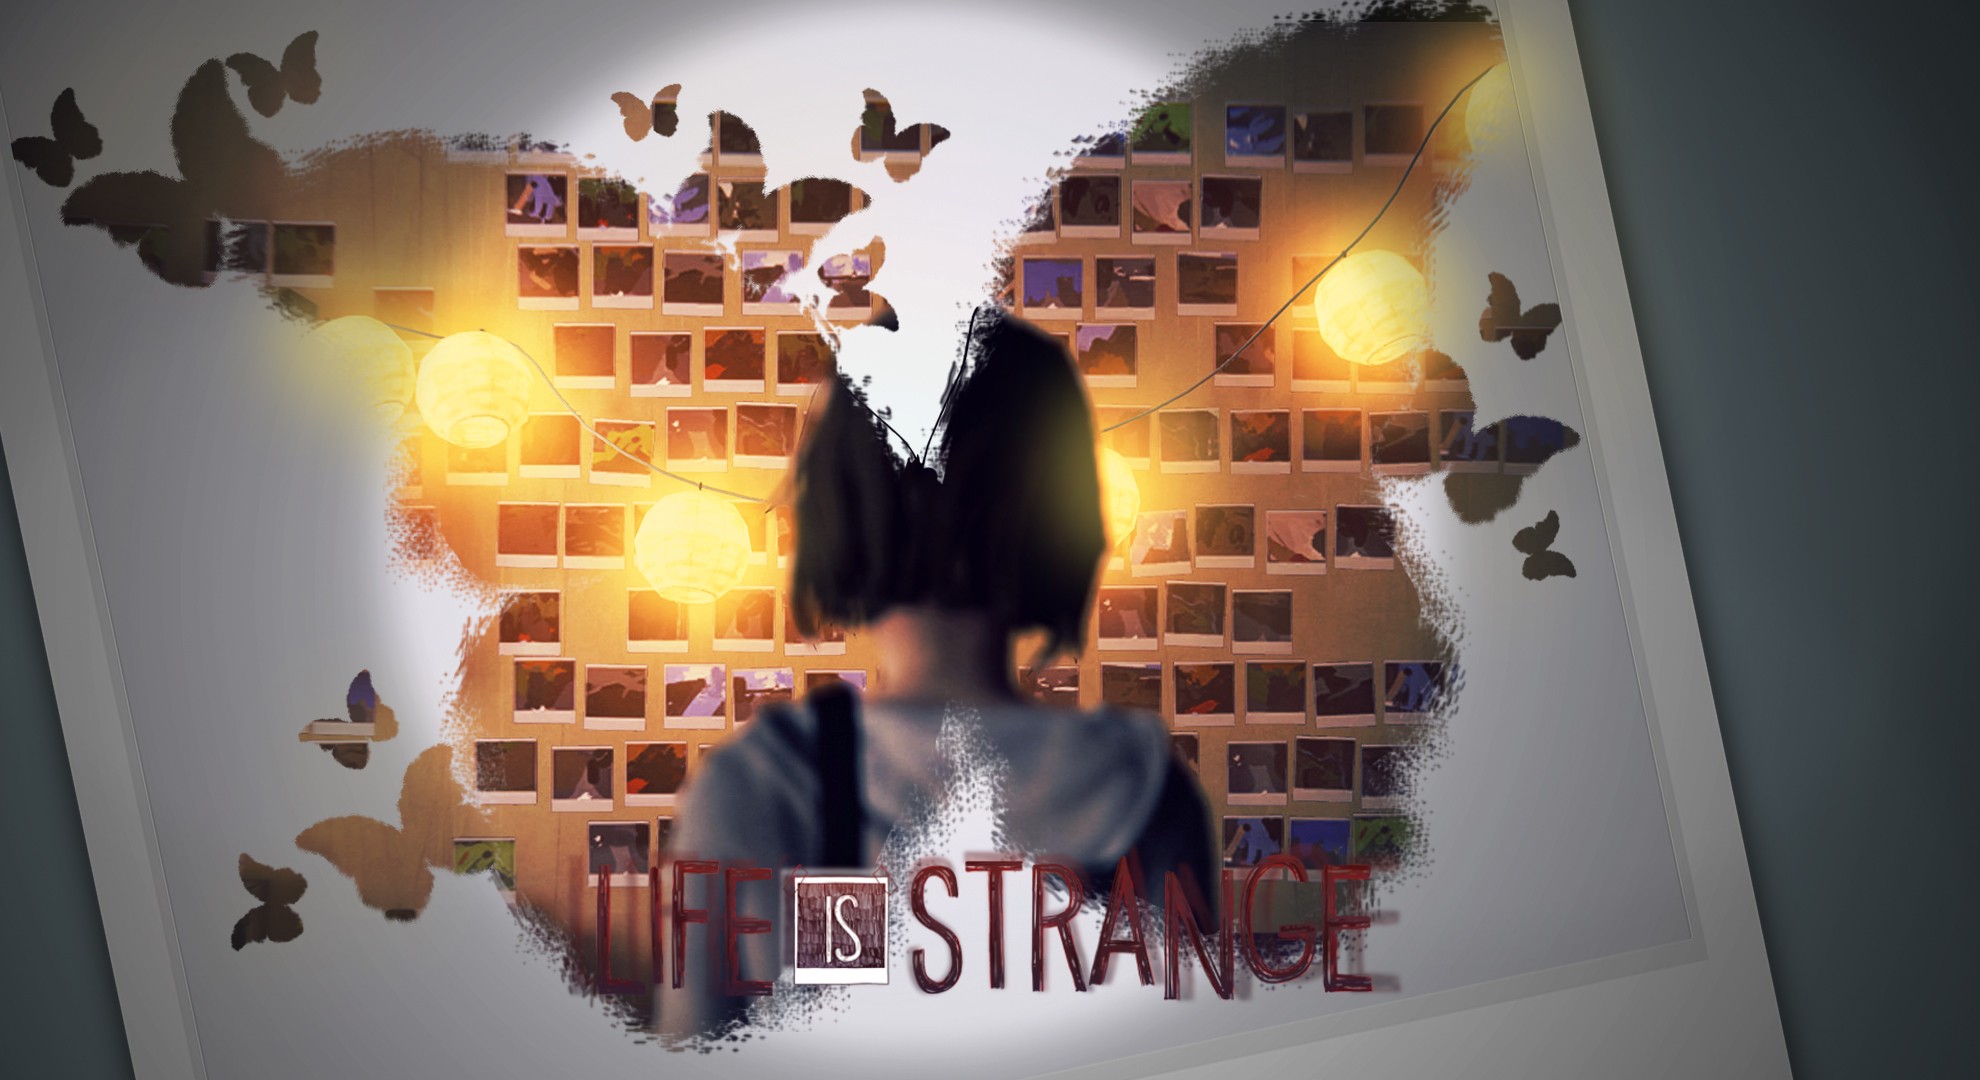 dr strange full movie hd online -youtube -vimeo